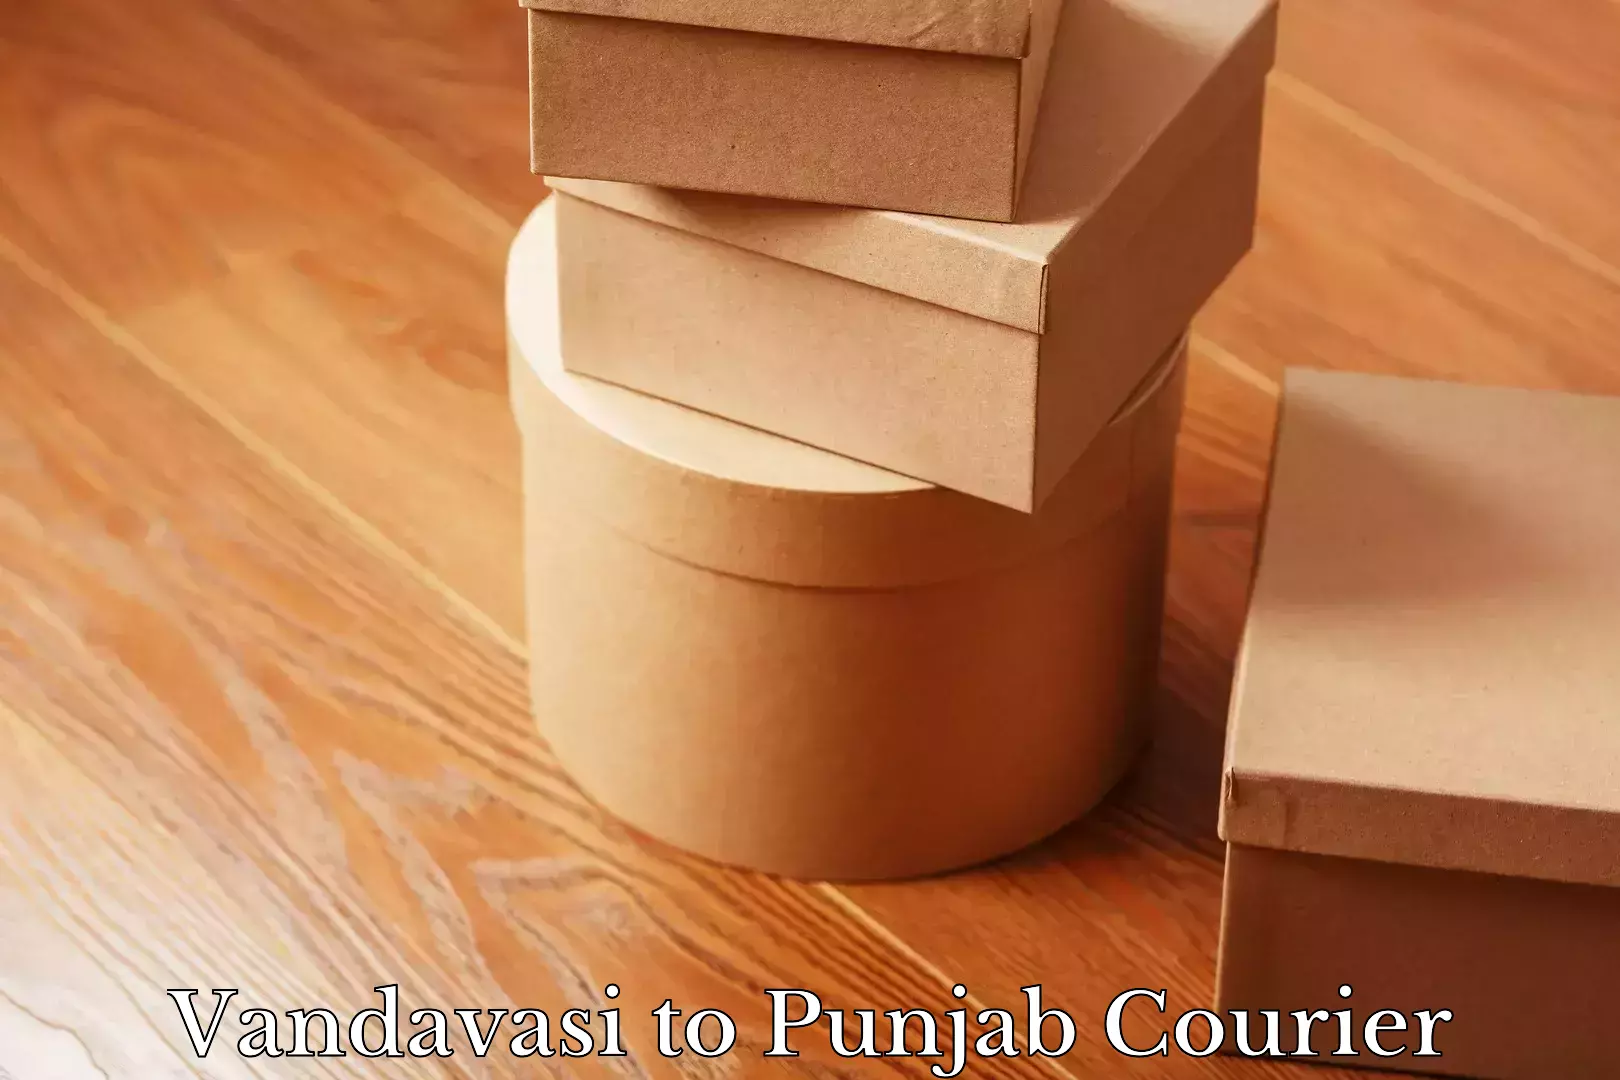 Expedited shipping methods Vandavasi to Punjab